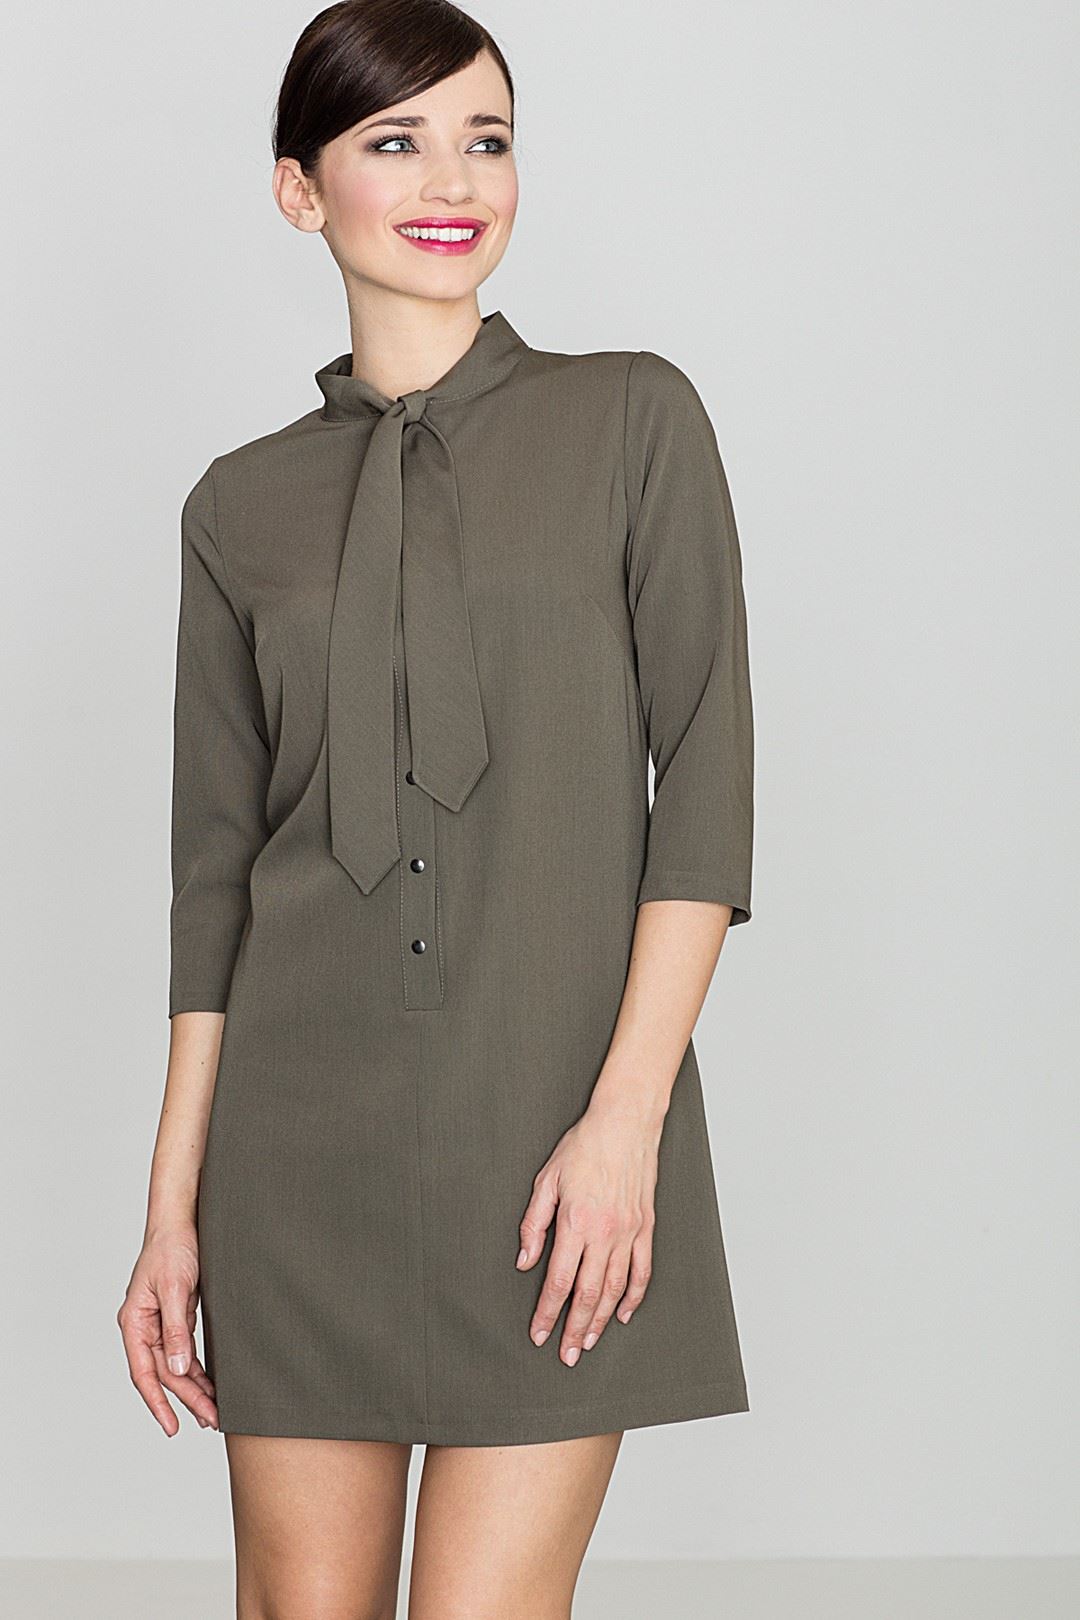 Dress K369 Olive XL